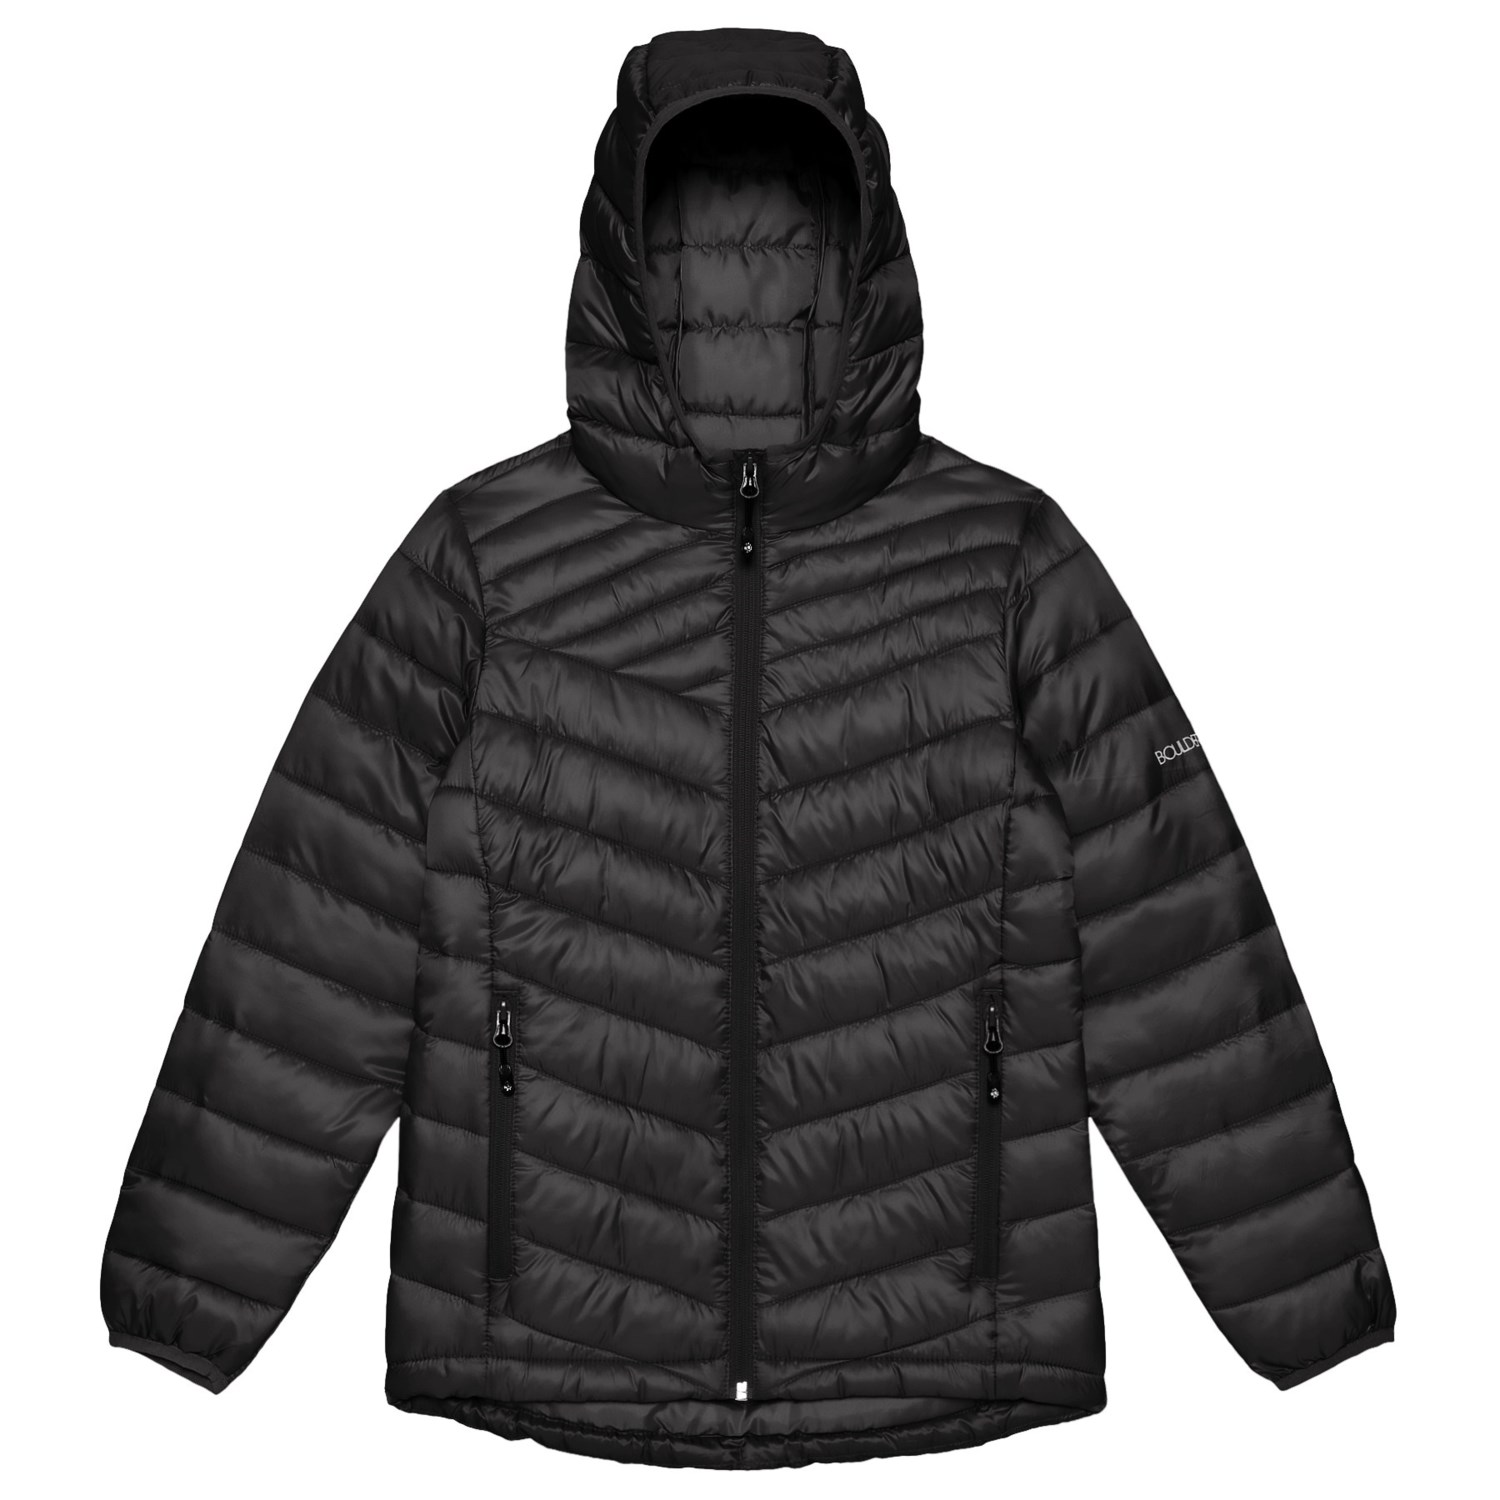 Boulder Gear D-Lite Puffer Jacket – Insulated (For Girls)